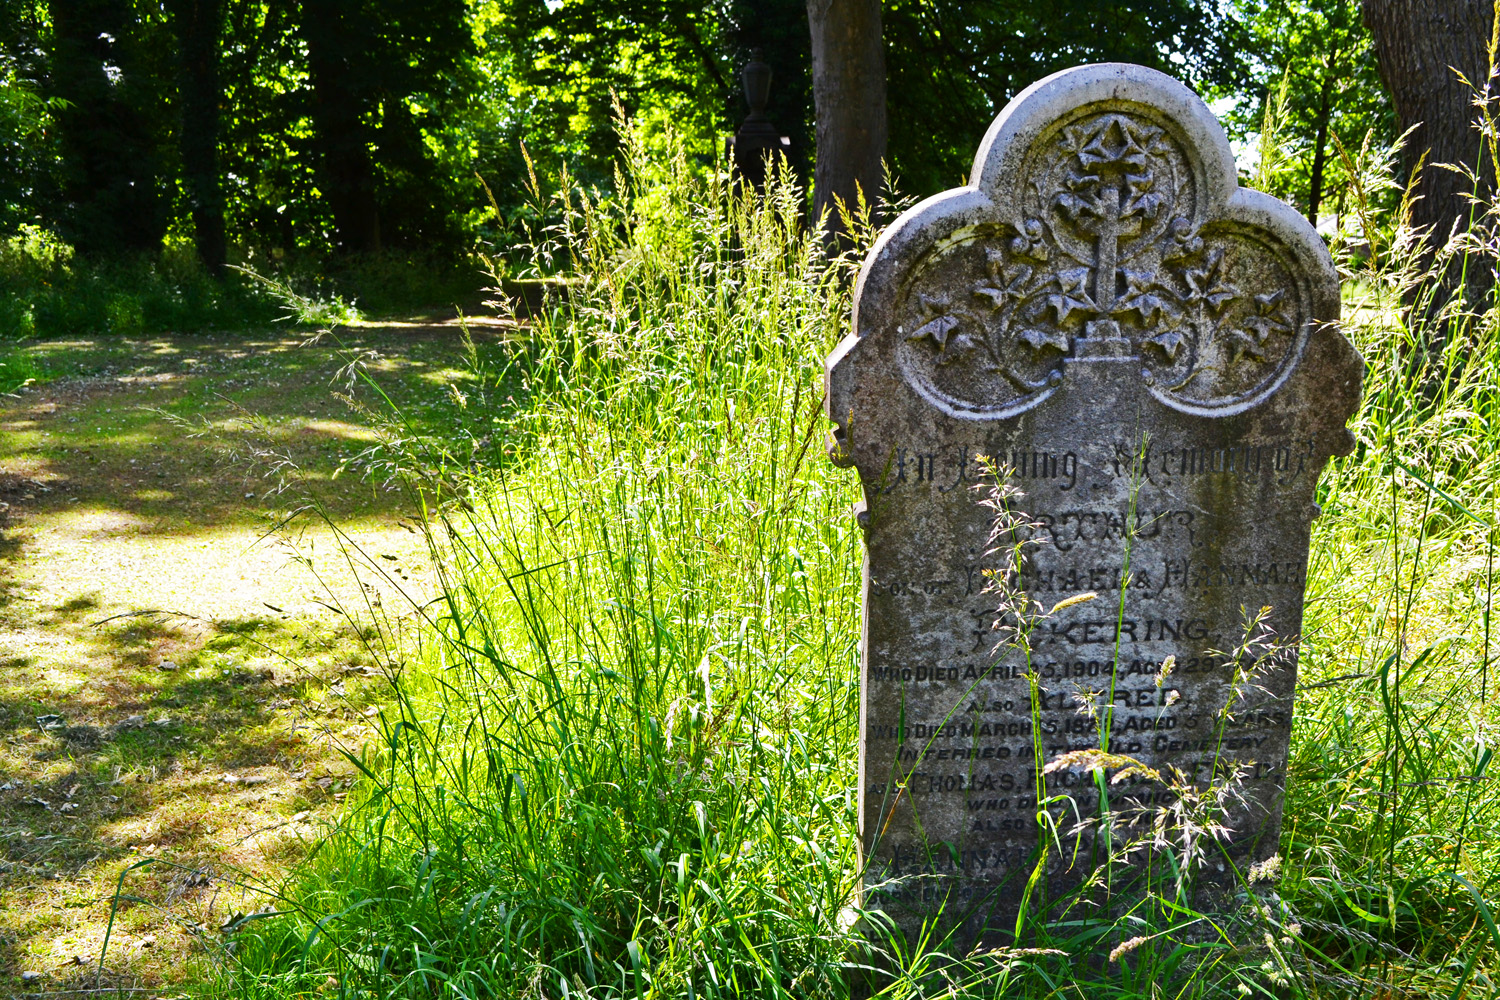 Linthorpe Cemetery